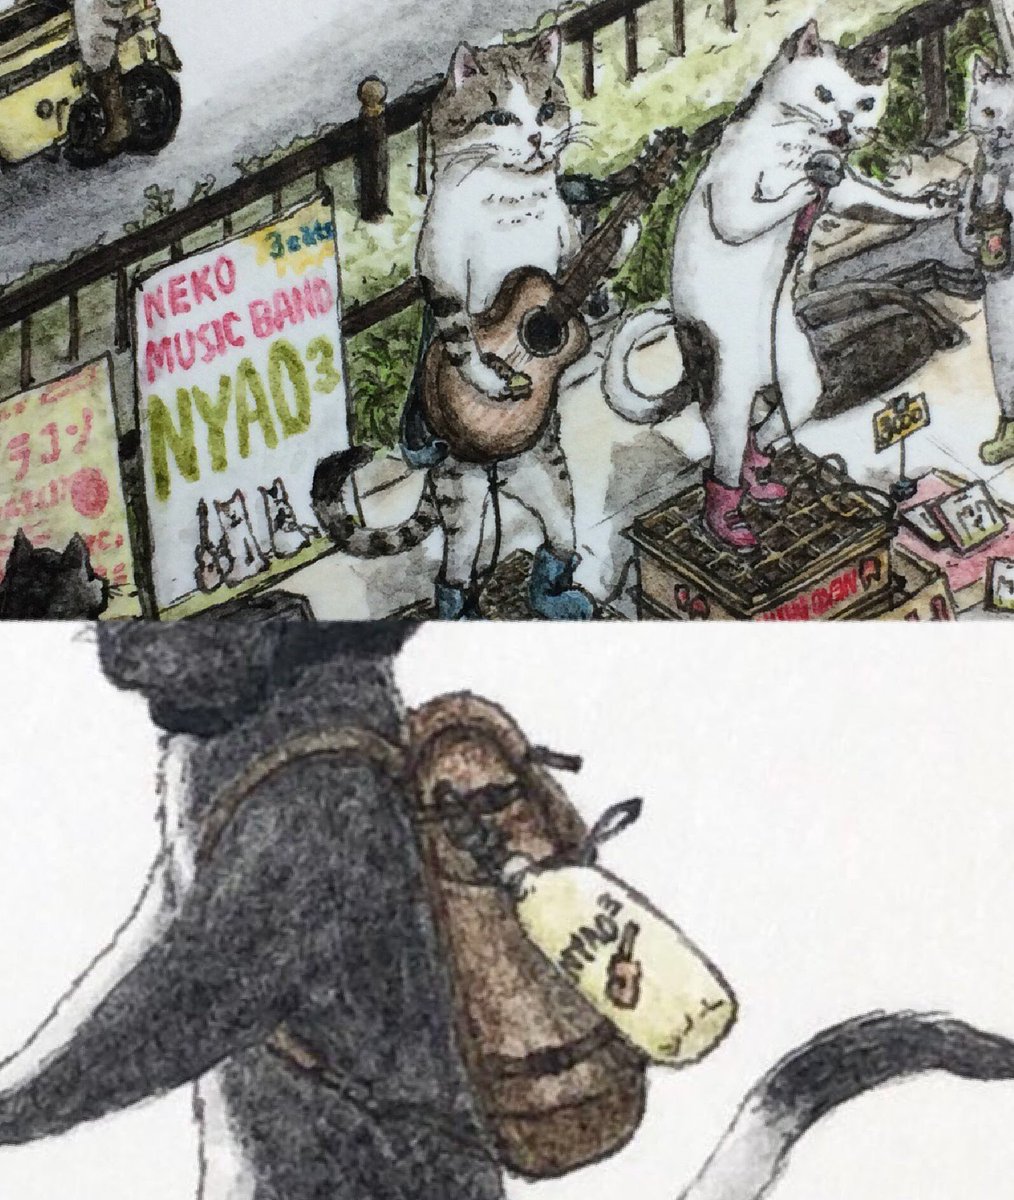 【お絵描き小話のつづき】
黒ぶち猫のキミがリュックに付けているペットボトルカバーは、大阪駅北口でよくライブをしているネコバンド「NYAO3」のオリジナルグッズ。
という、自分でも忘れていた細かな設定。
ちなみにNYAO3は本来3猫体制ですが、1匹旅に出ているため2猫体制で活動中です。maniac…! 